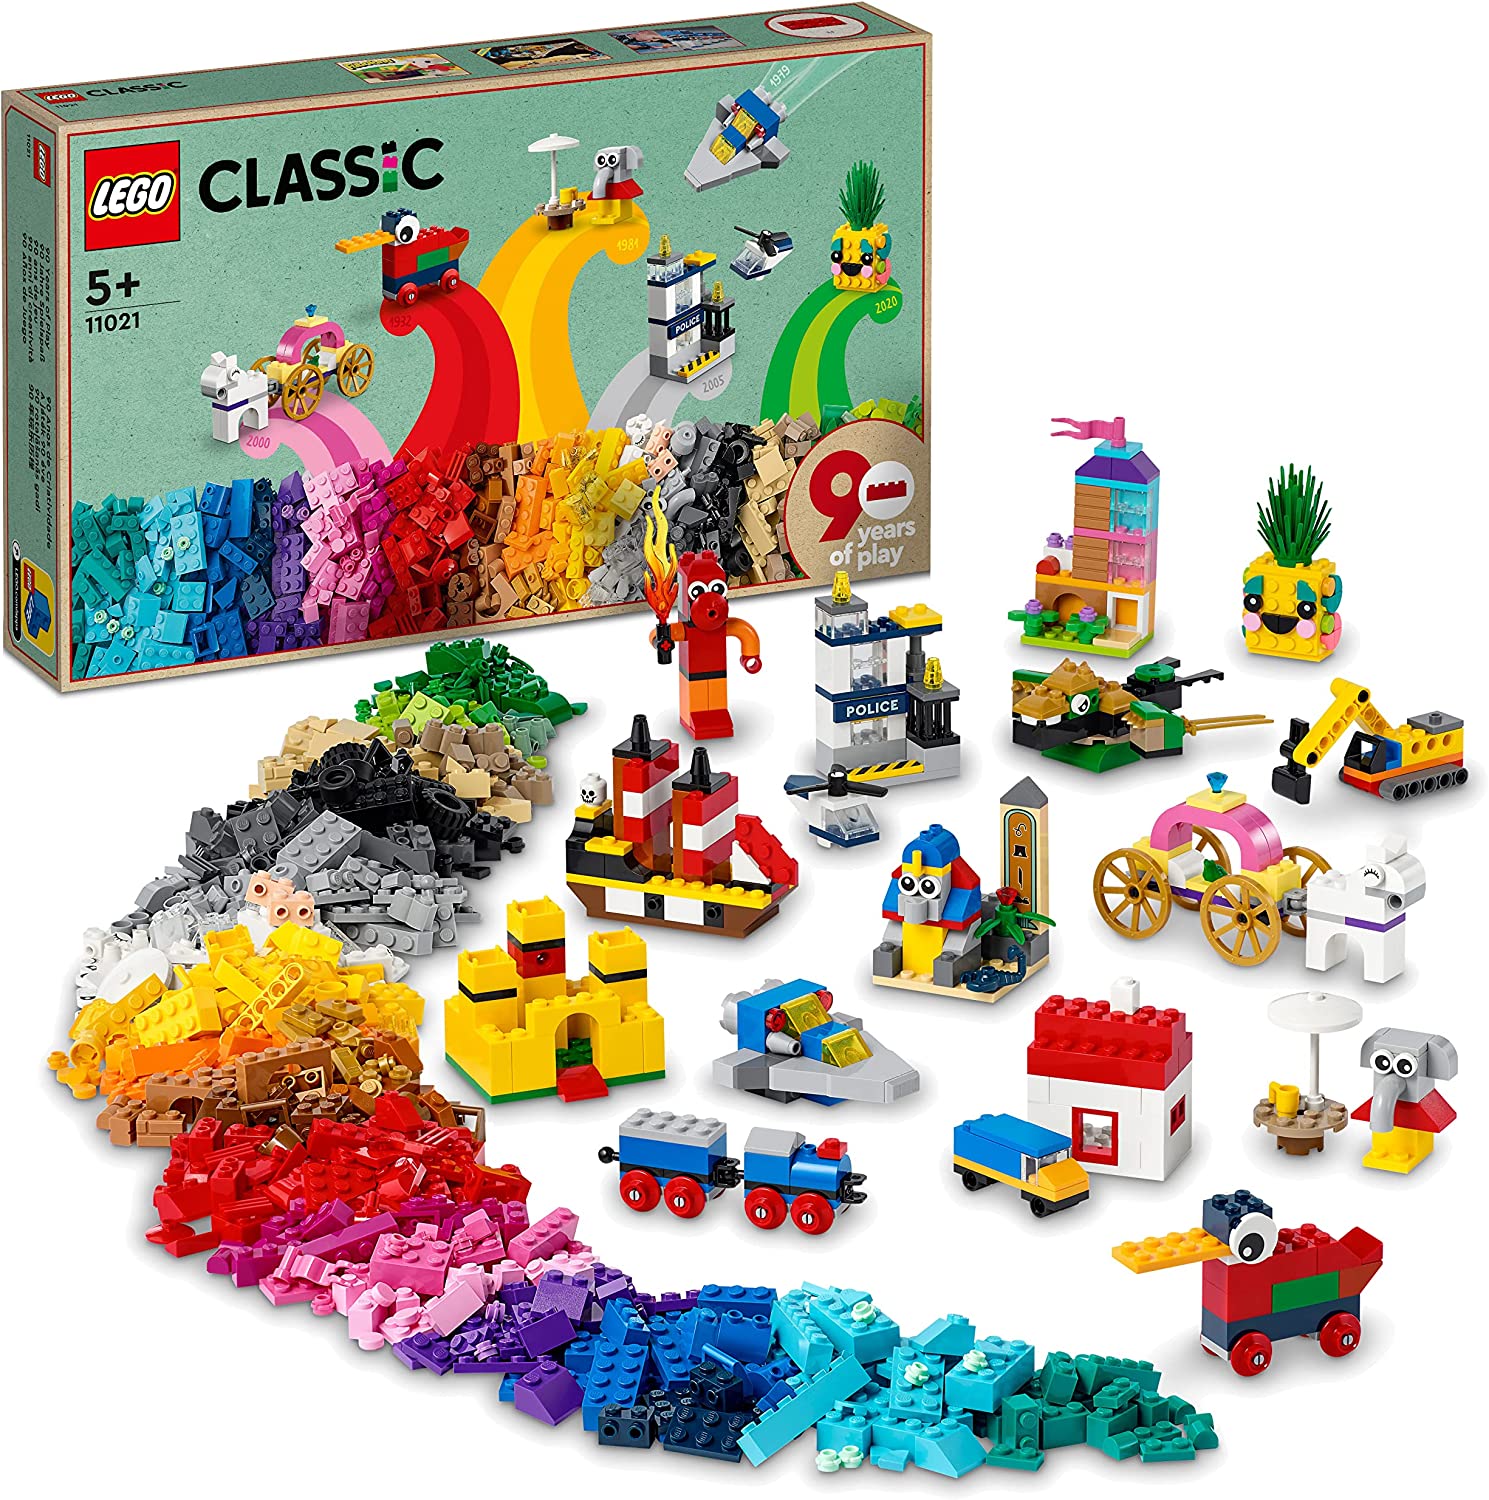 LEGO 11021 Classic 90 Jahre Spielspaß Set, Bausteine-Box mit 15 Mini-Modellen legendärer Spielzeuge, inkl. Zug und Schloss, Konstruktionsspielzeug